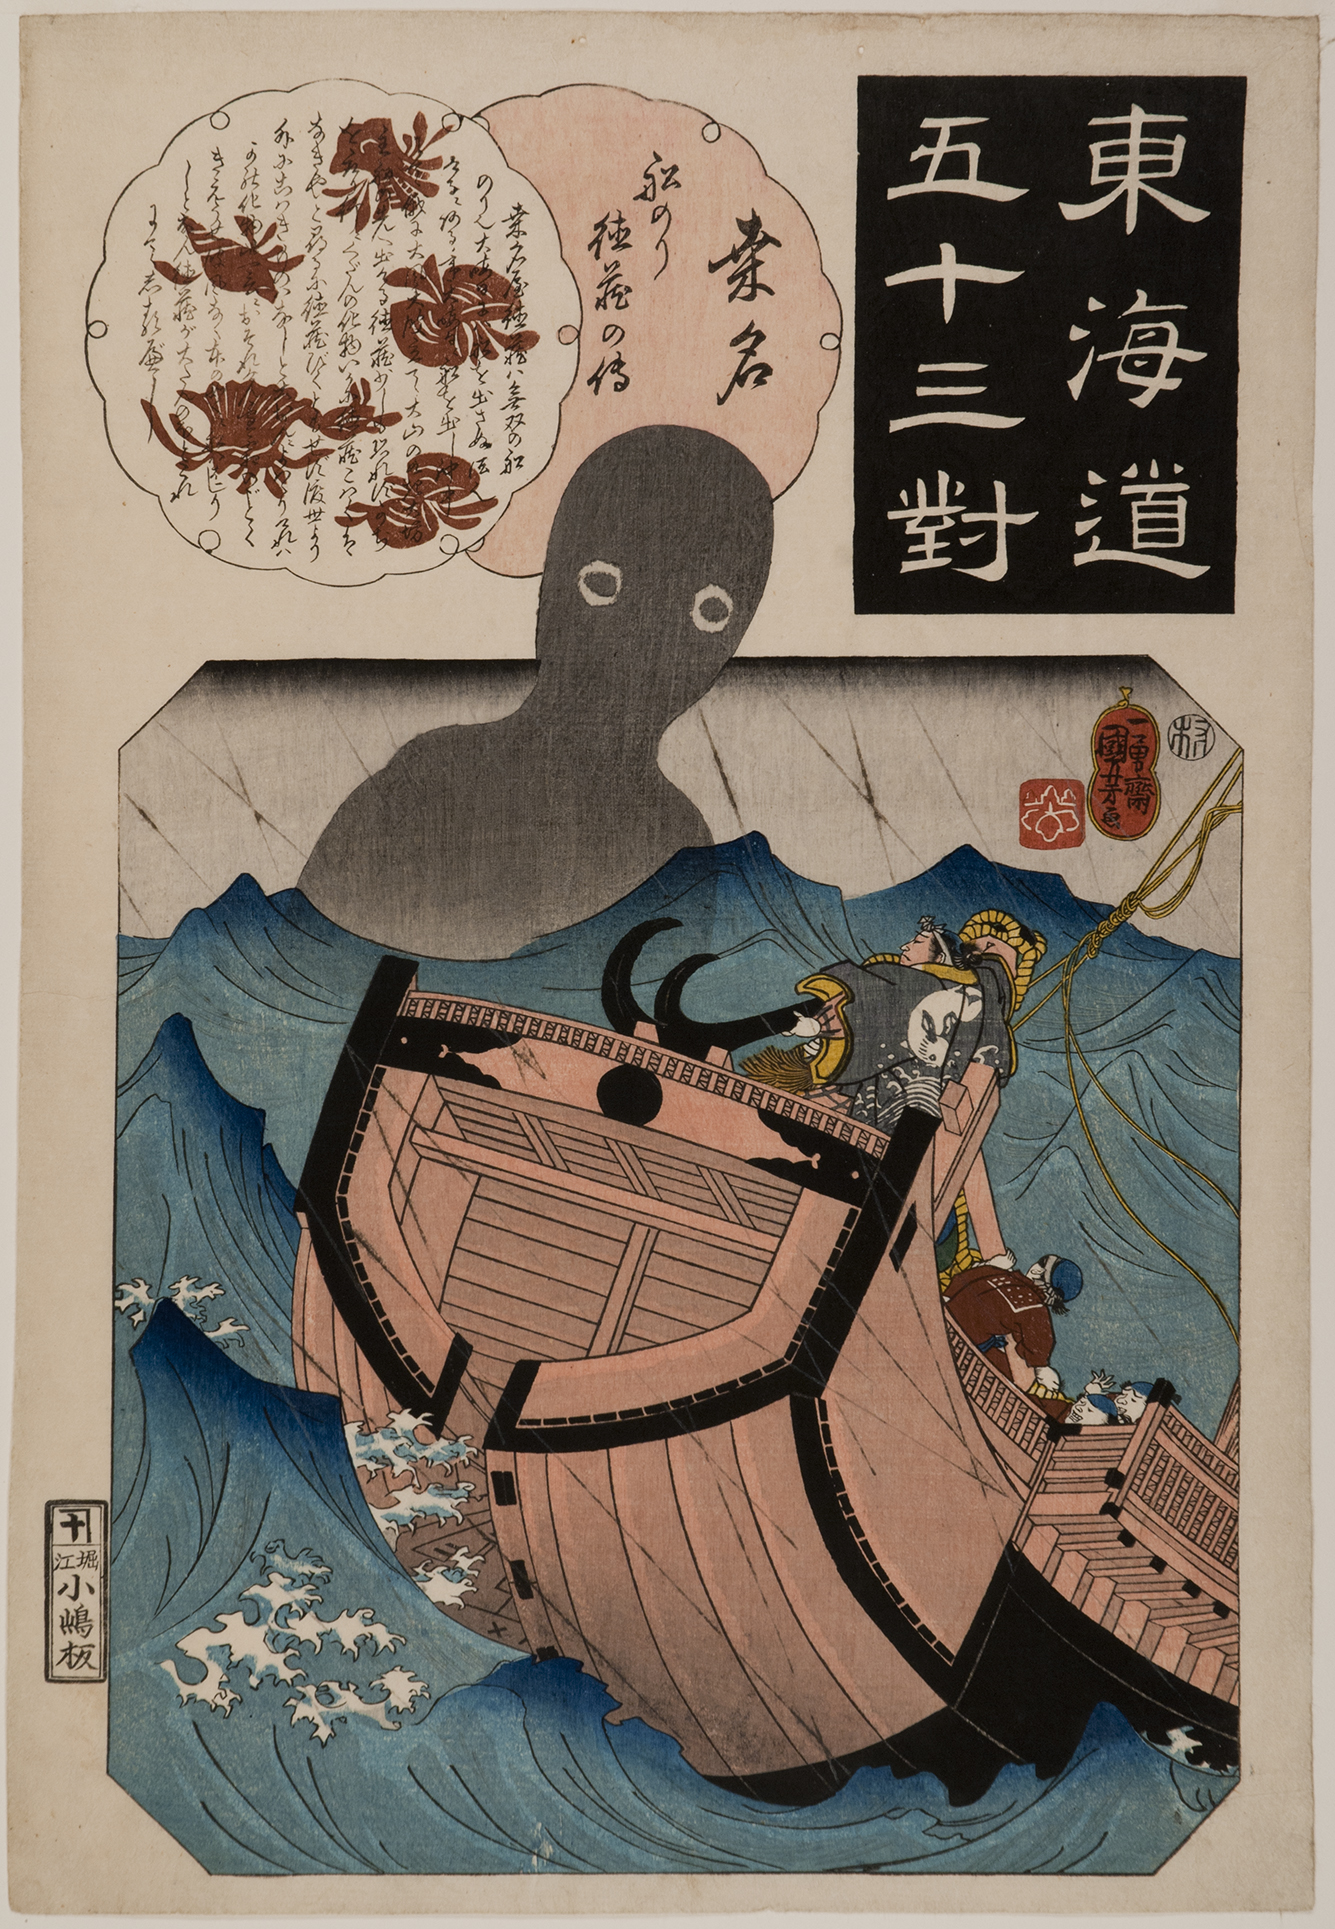 Utagawa Kuniyoshi (Japanese, 1798-1861), Kuwana: Legend of the Sailor Tokuzo, c. 1844-45